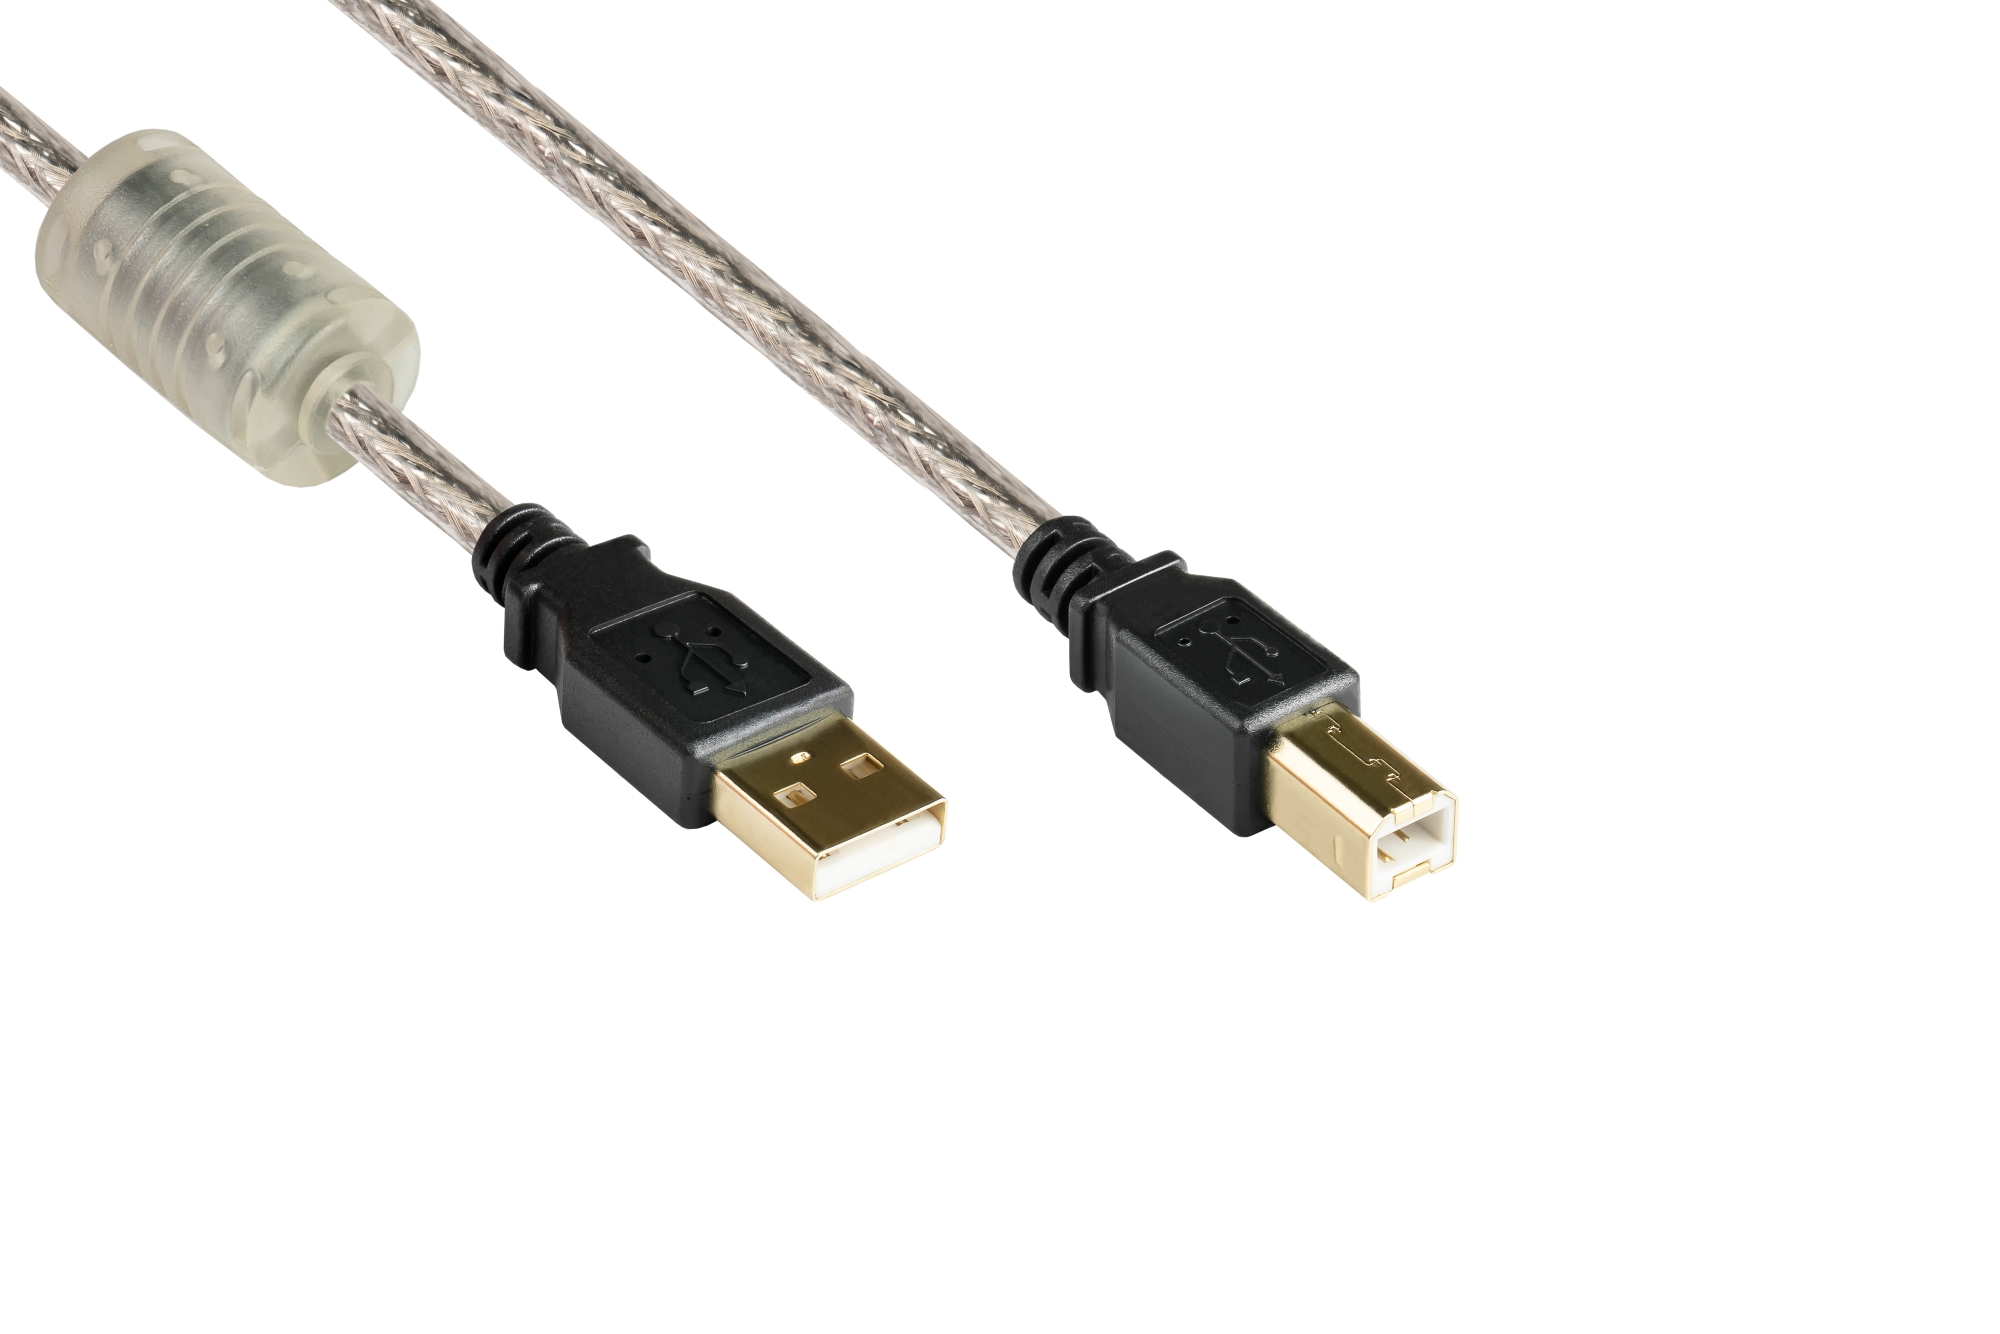 Anschlusskabel USB 2.0 Stecker A an Stecker B, High Quality mit Ferritkern, transparent, 1,8m